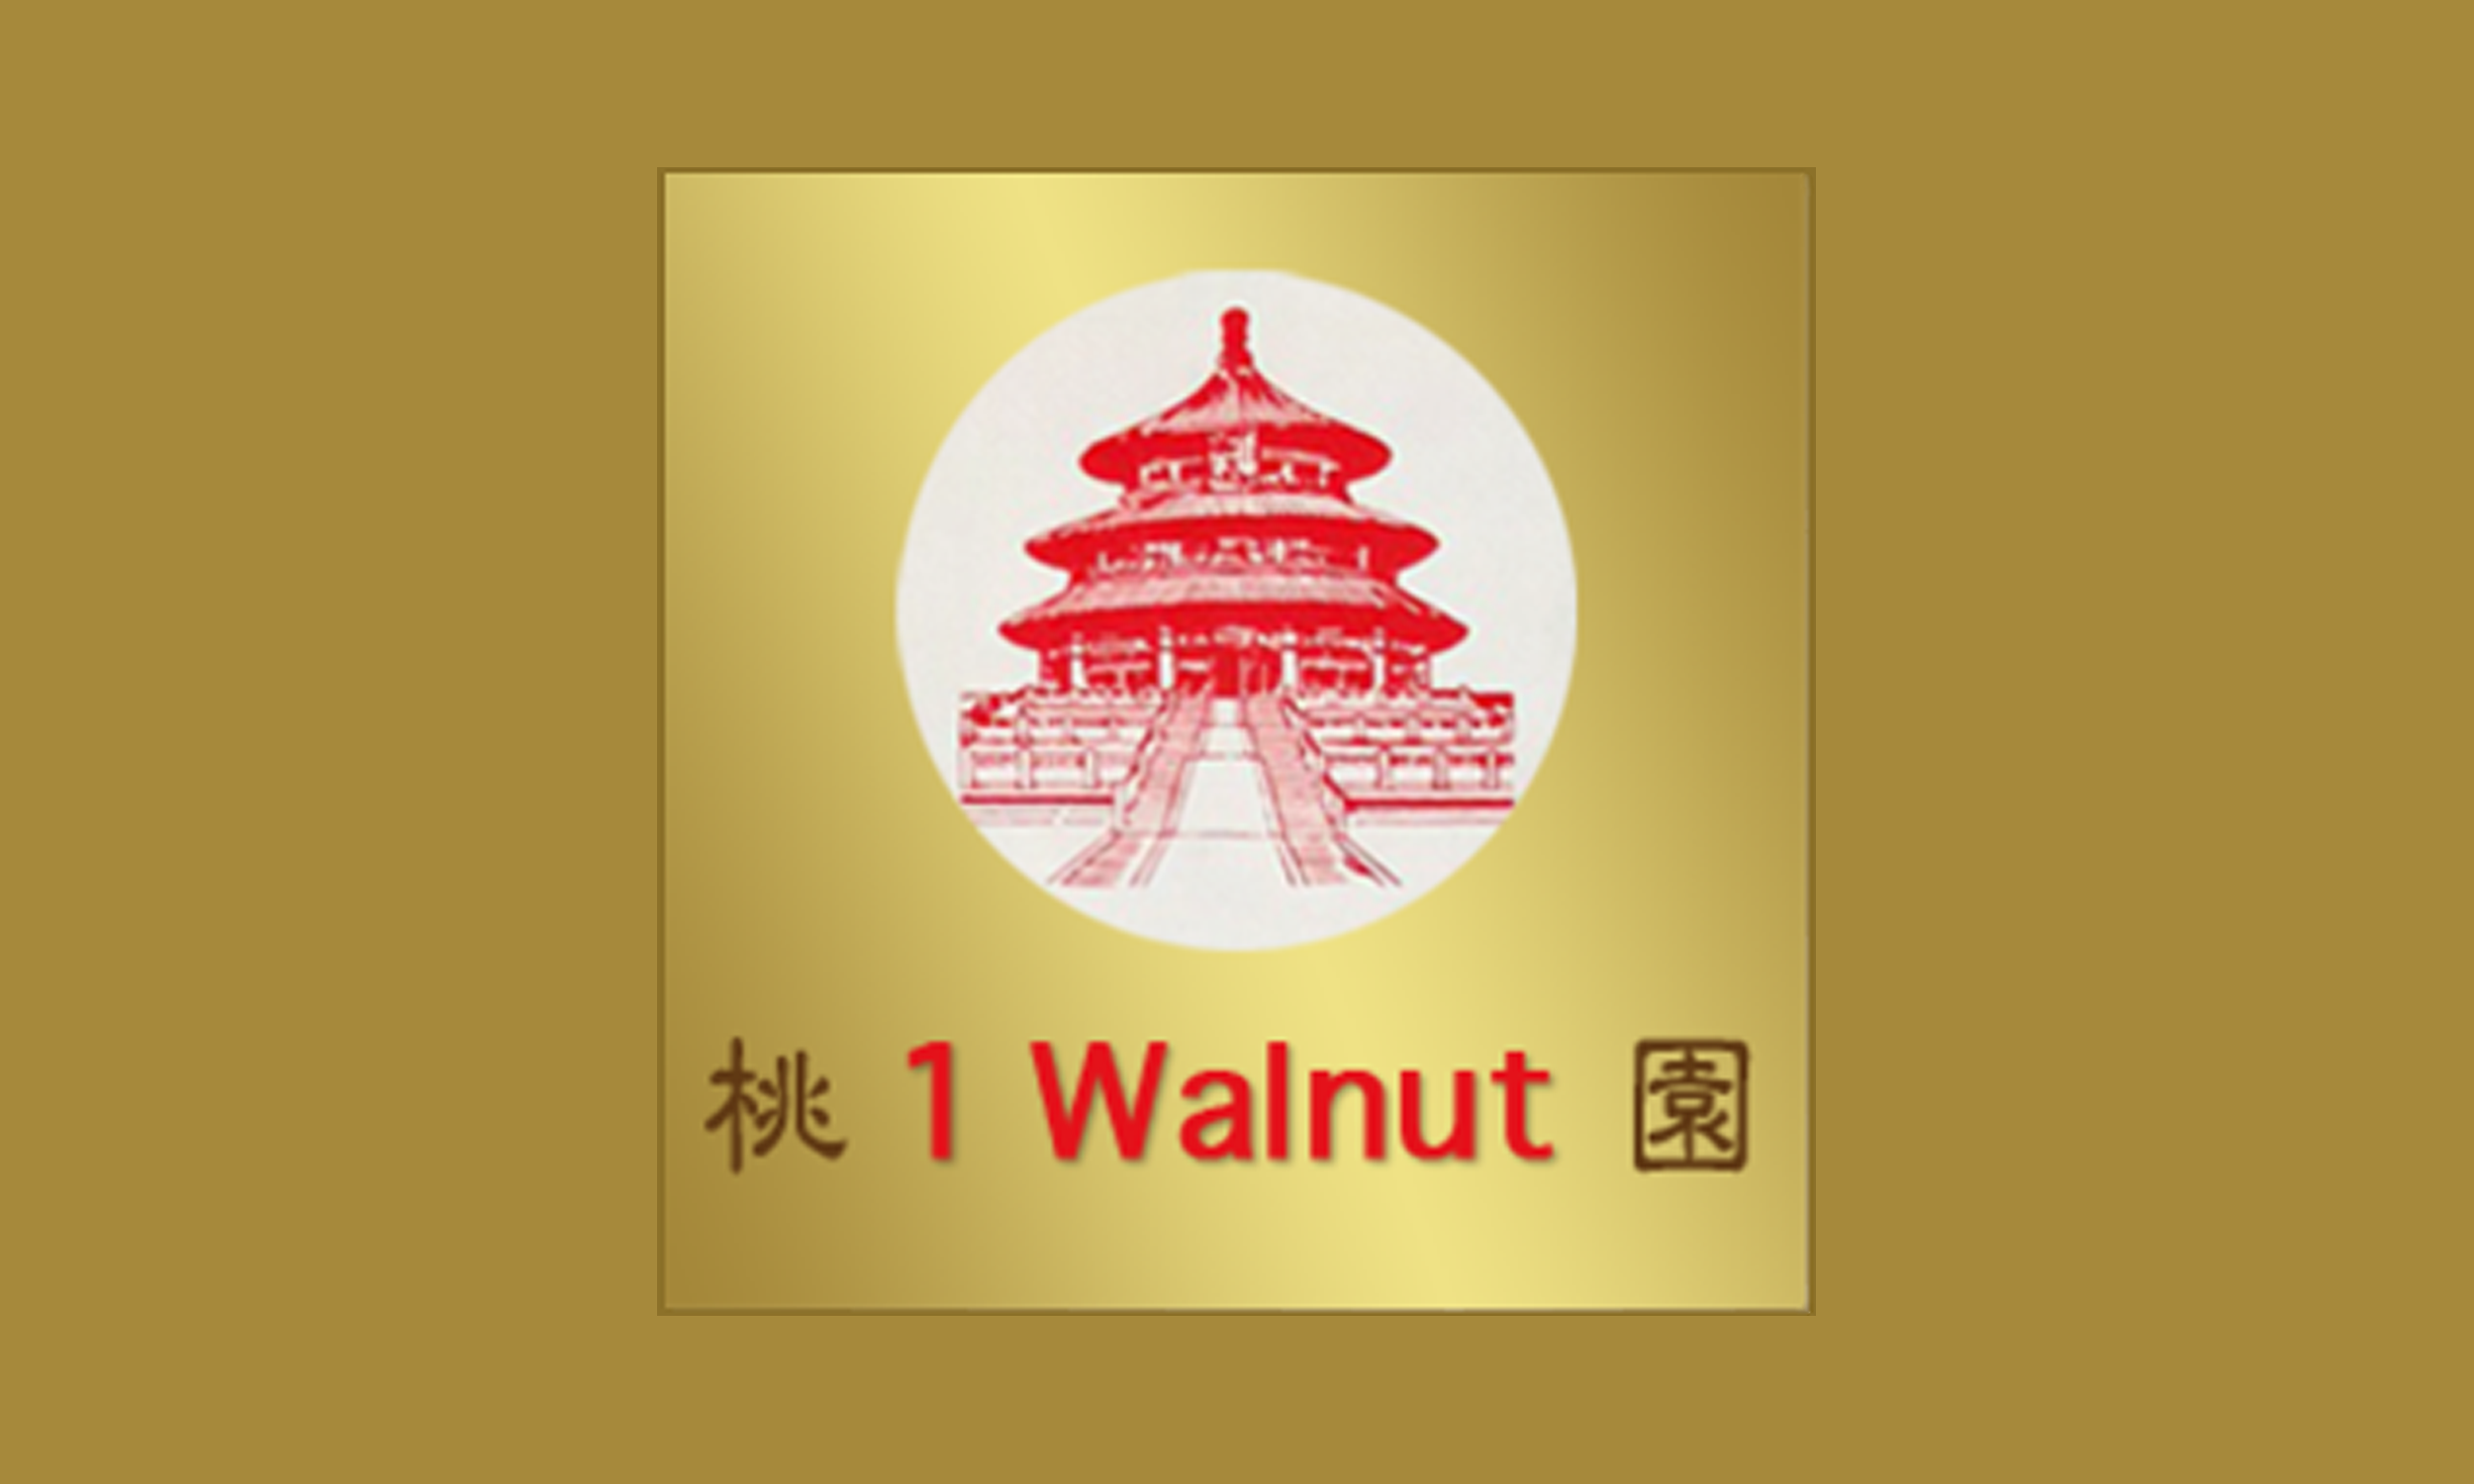 1 Walnut